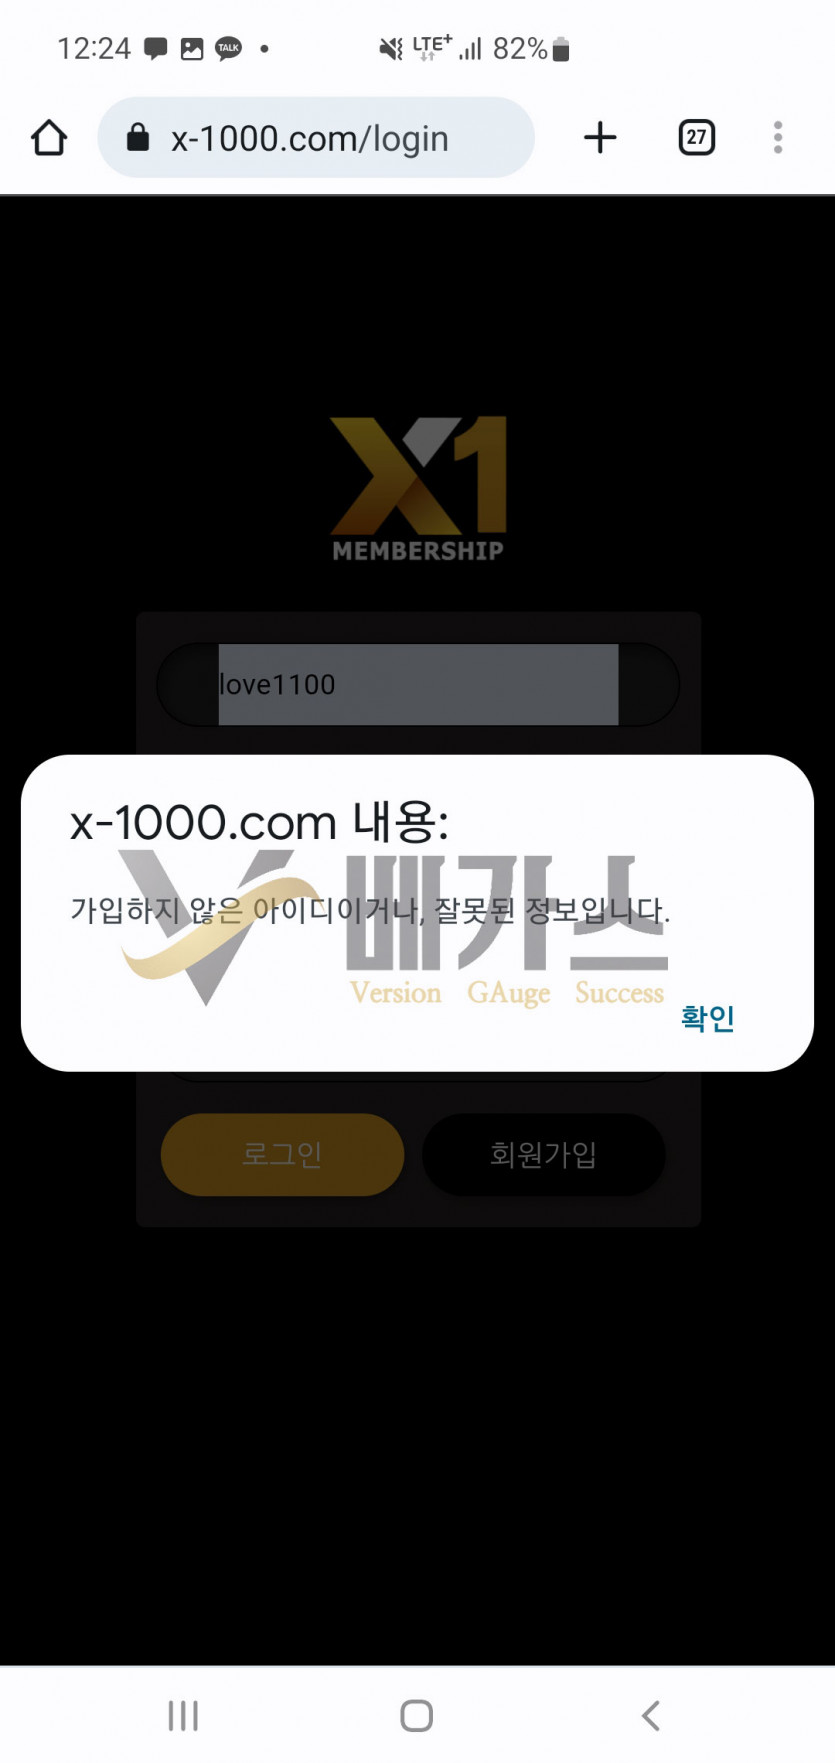 먹튀사이트 X1(x-1000.com) 회원 ID탈퇴처리내역 먹튀검증 증거자료3